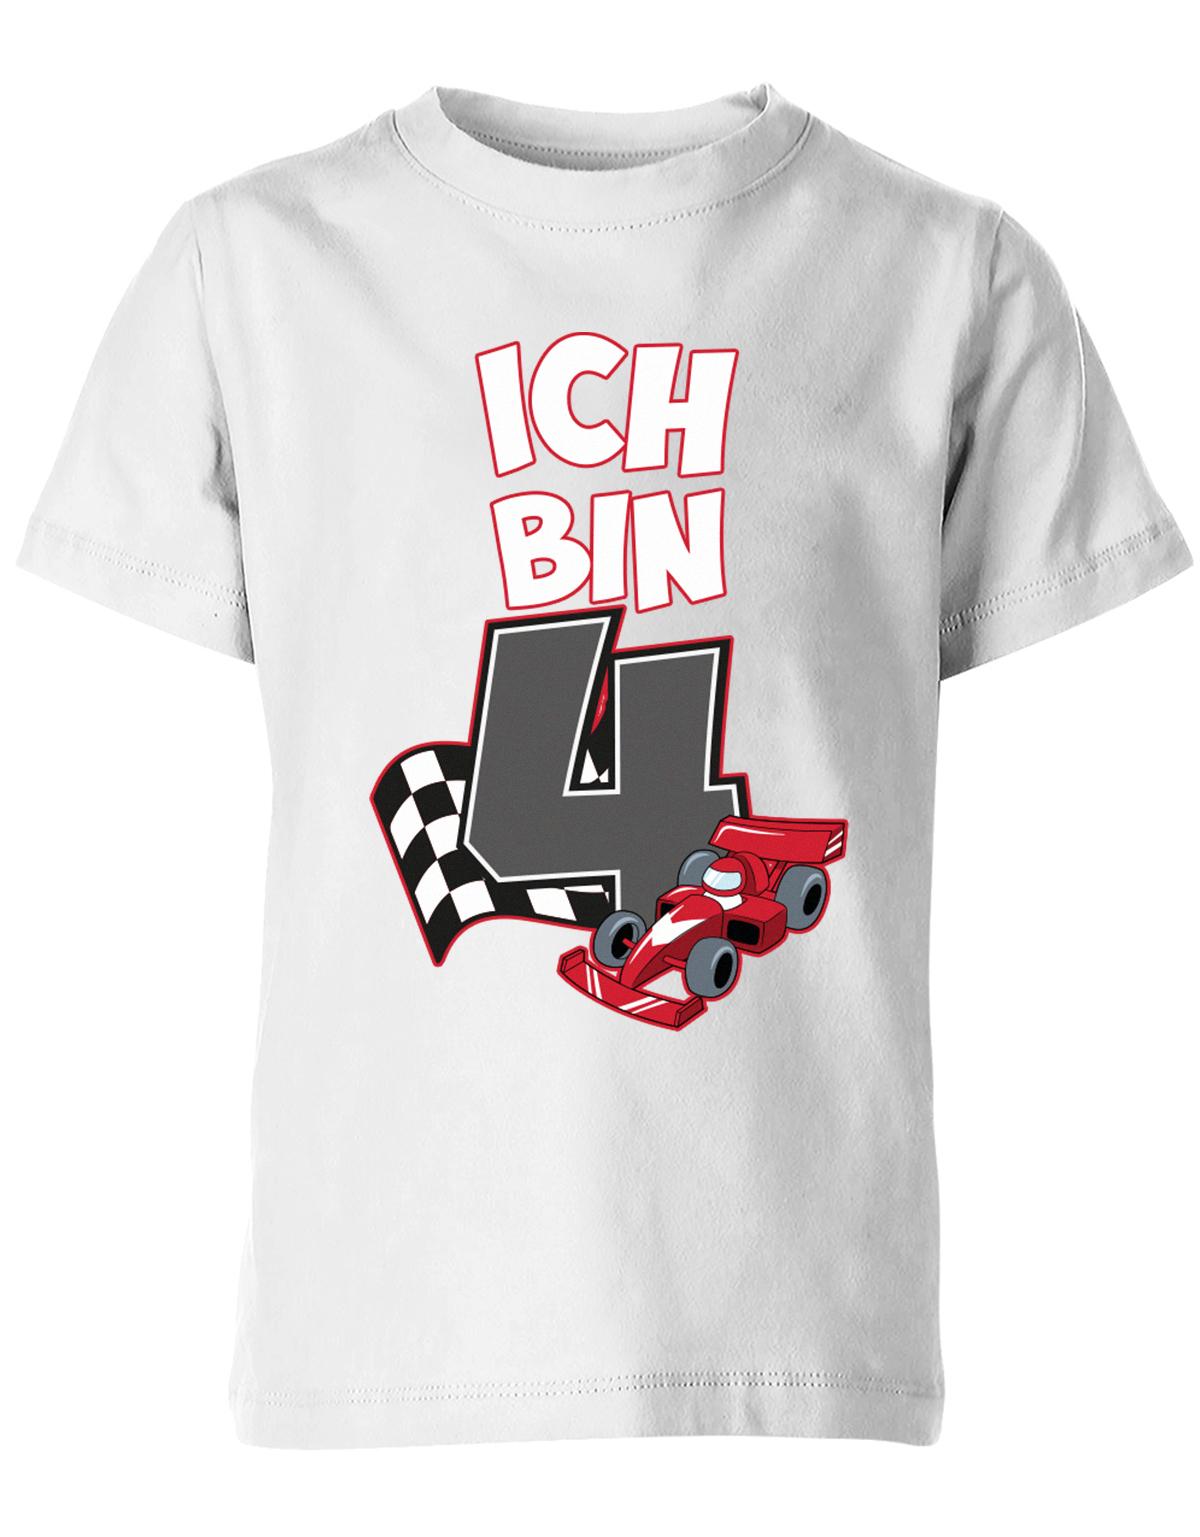 ich-bin-4-autorennen-rennwagen-geburtstag-rennfahrer-kinder-shirt-weiss